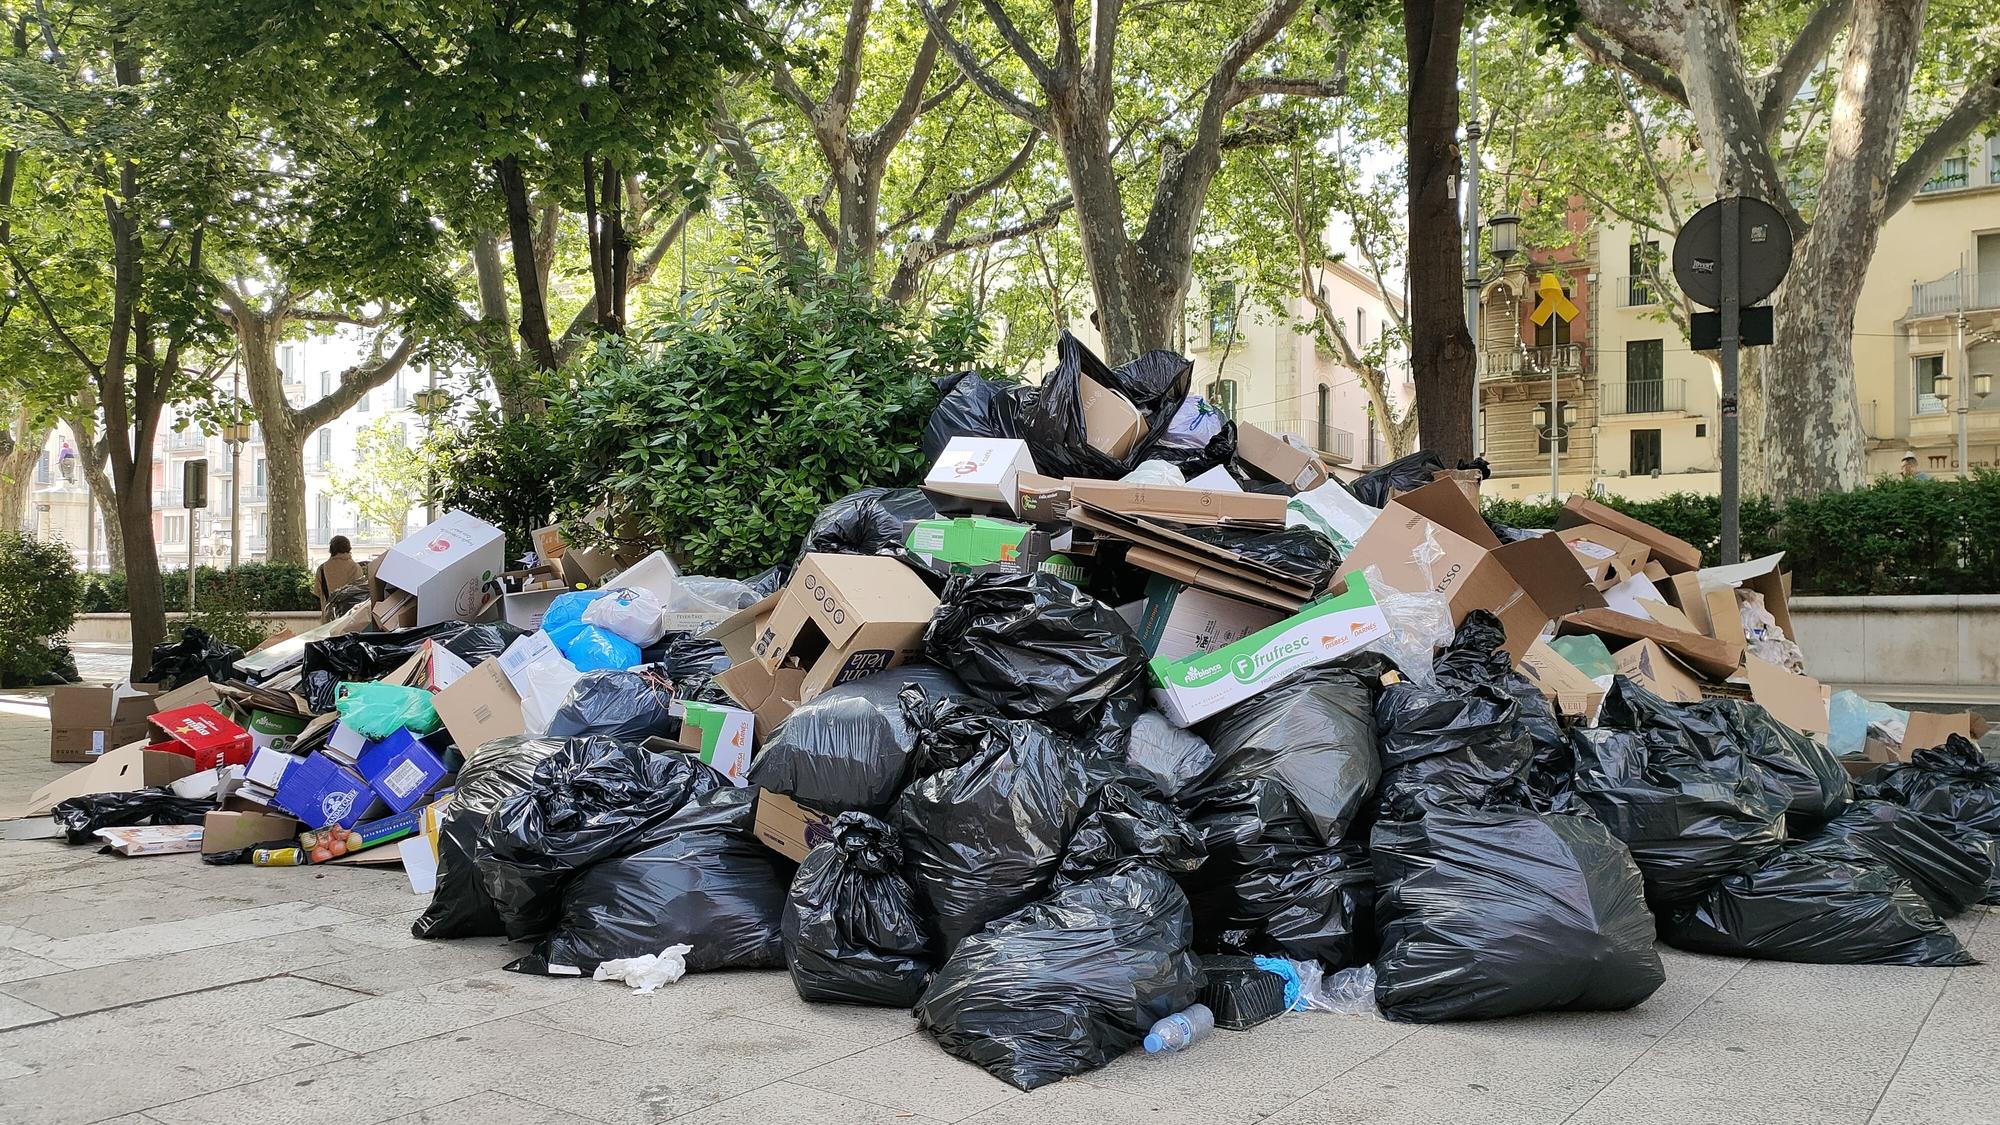 Figueres segueix patint la vaga d'escombraries una setmana després